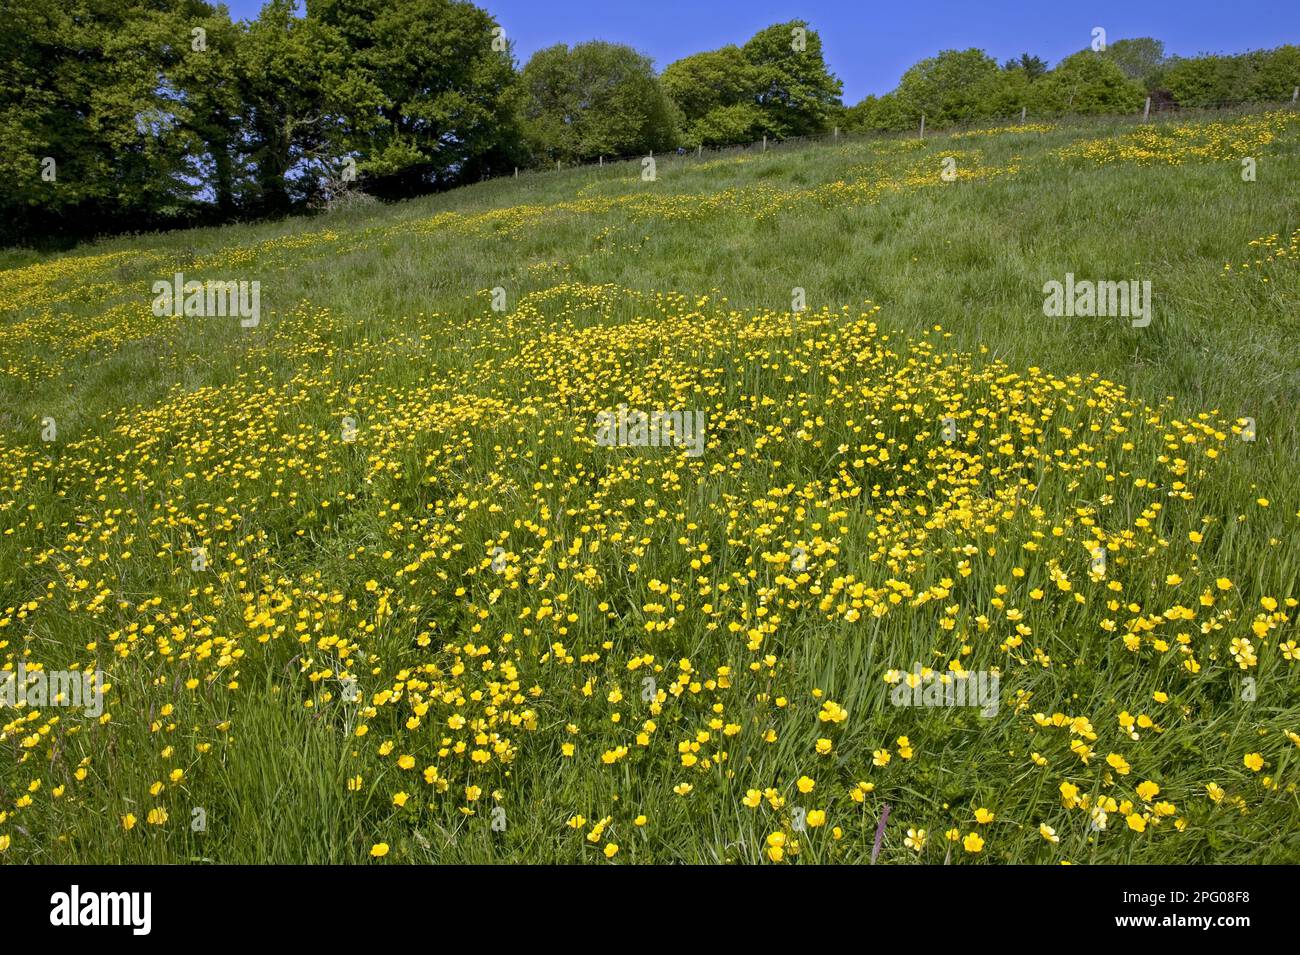 Coppe fiorite (Ranunculus acris), un tappeto giallo in un prato verde erboso in una giornata di primavera luminosa con alberi e cielo blu Foto Stock